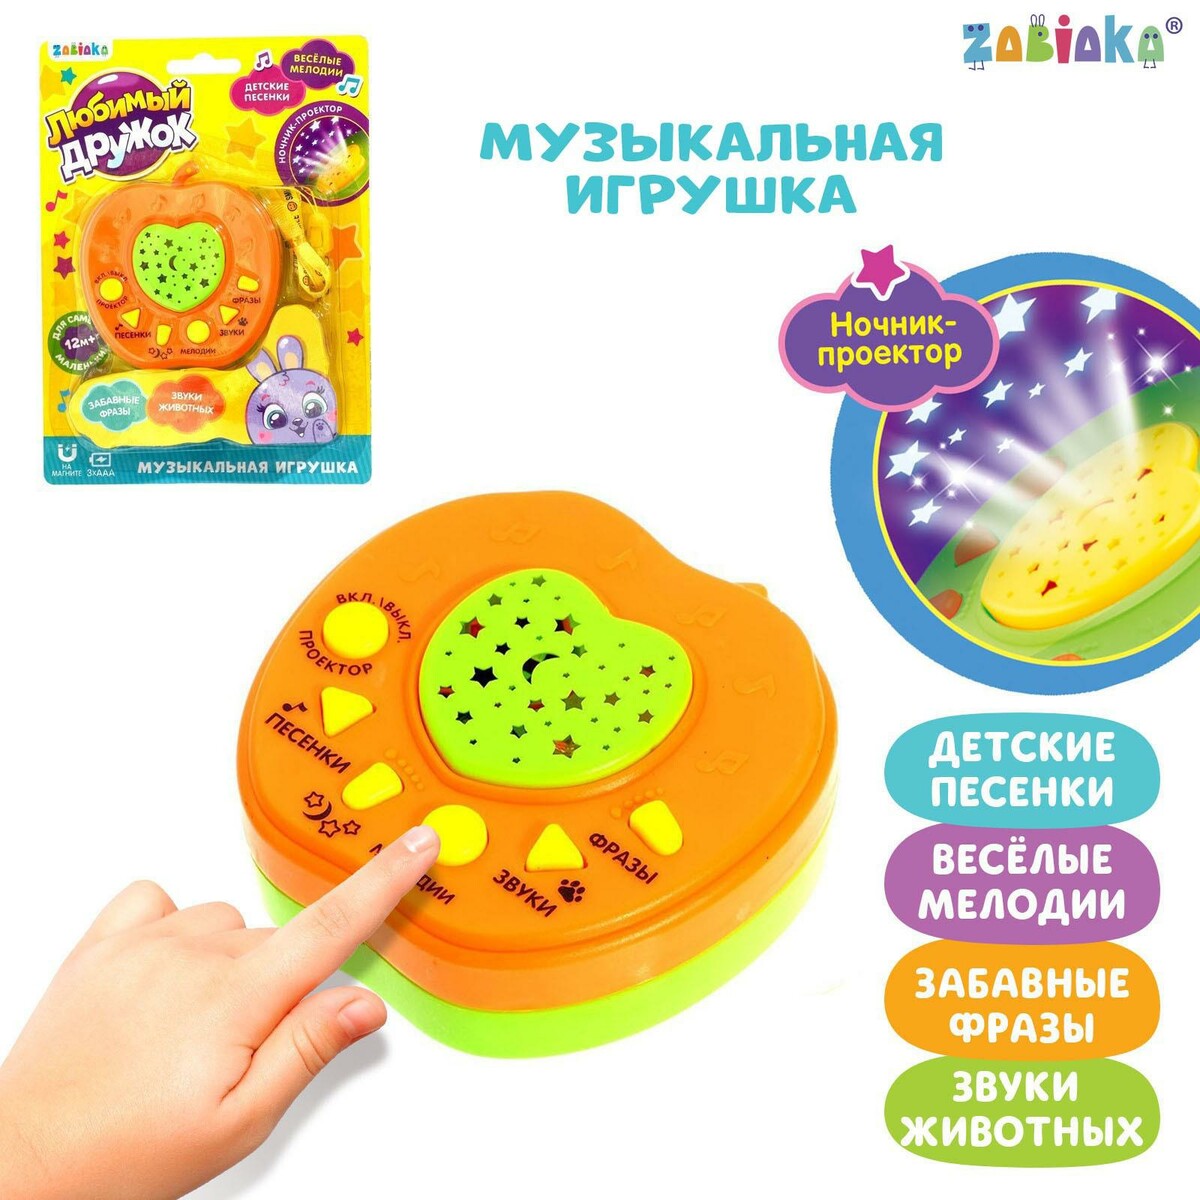 Музыкальная игрушка-проектор музыкальная игрушка ночник